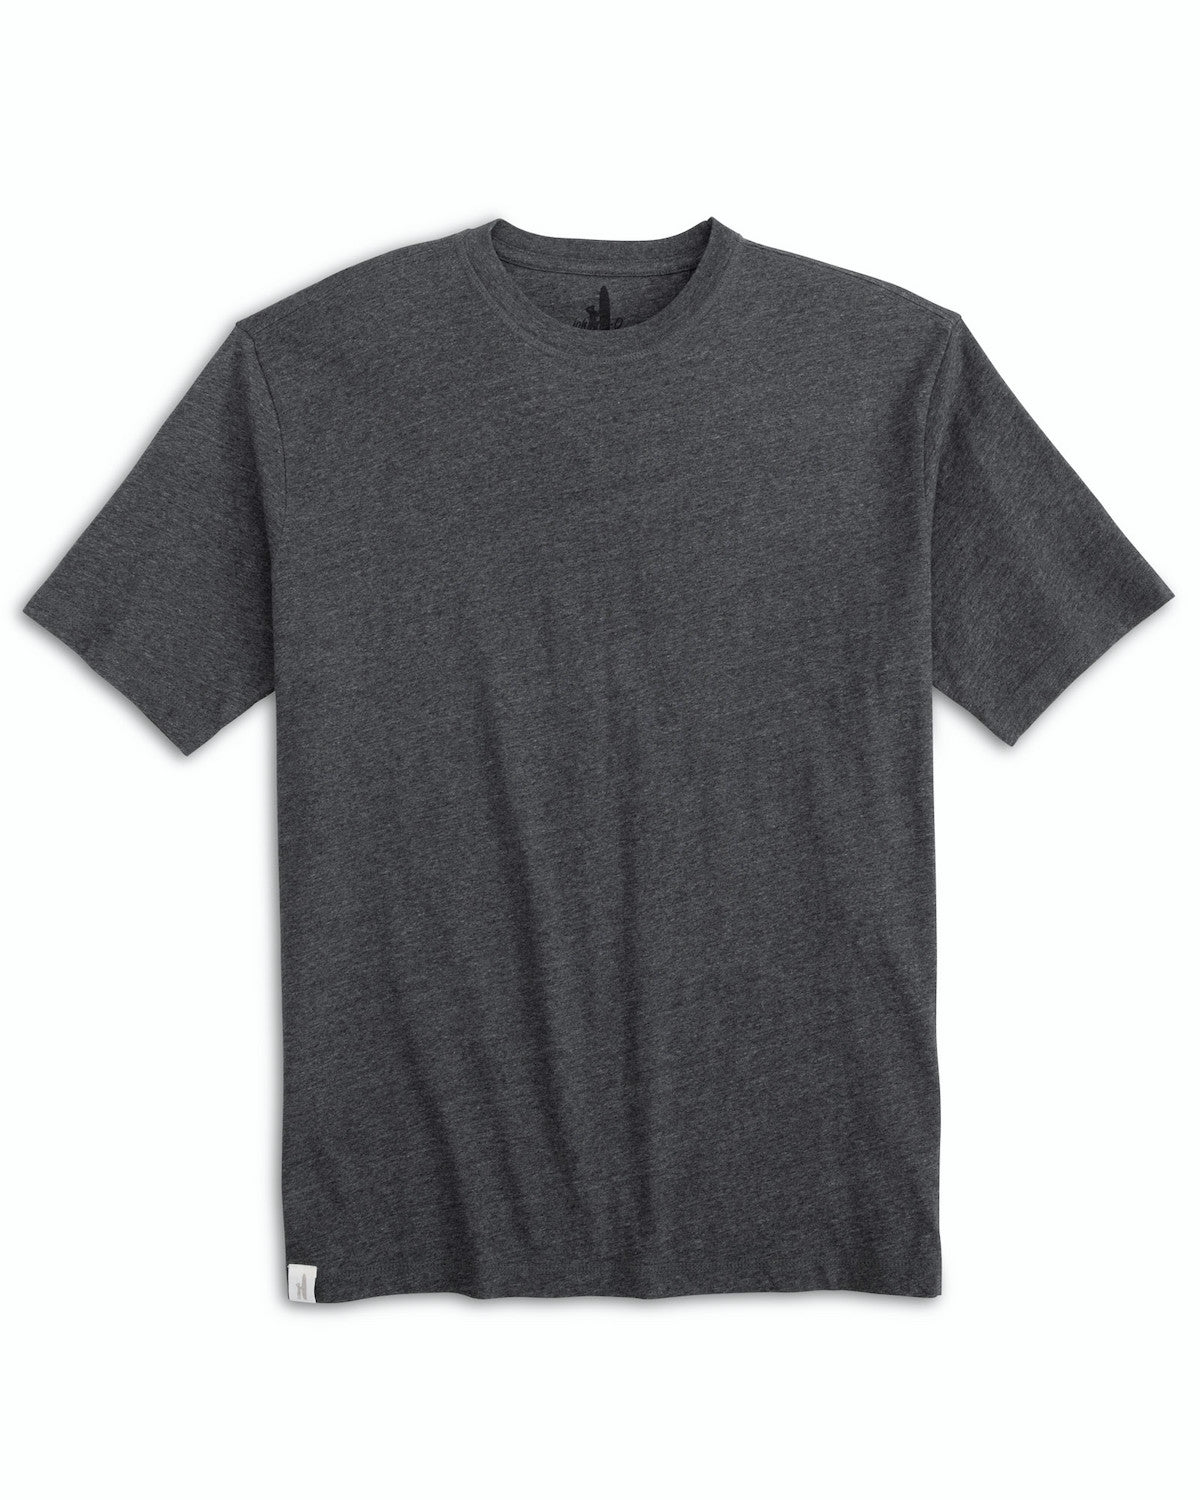 Johnnie-O Men's Heathered Spencer T-Shirt Apparel Johnnie-O Coal Small 